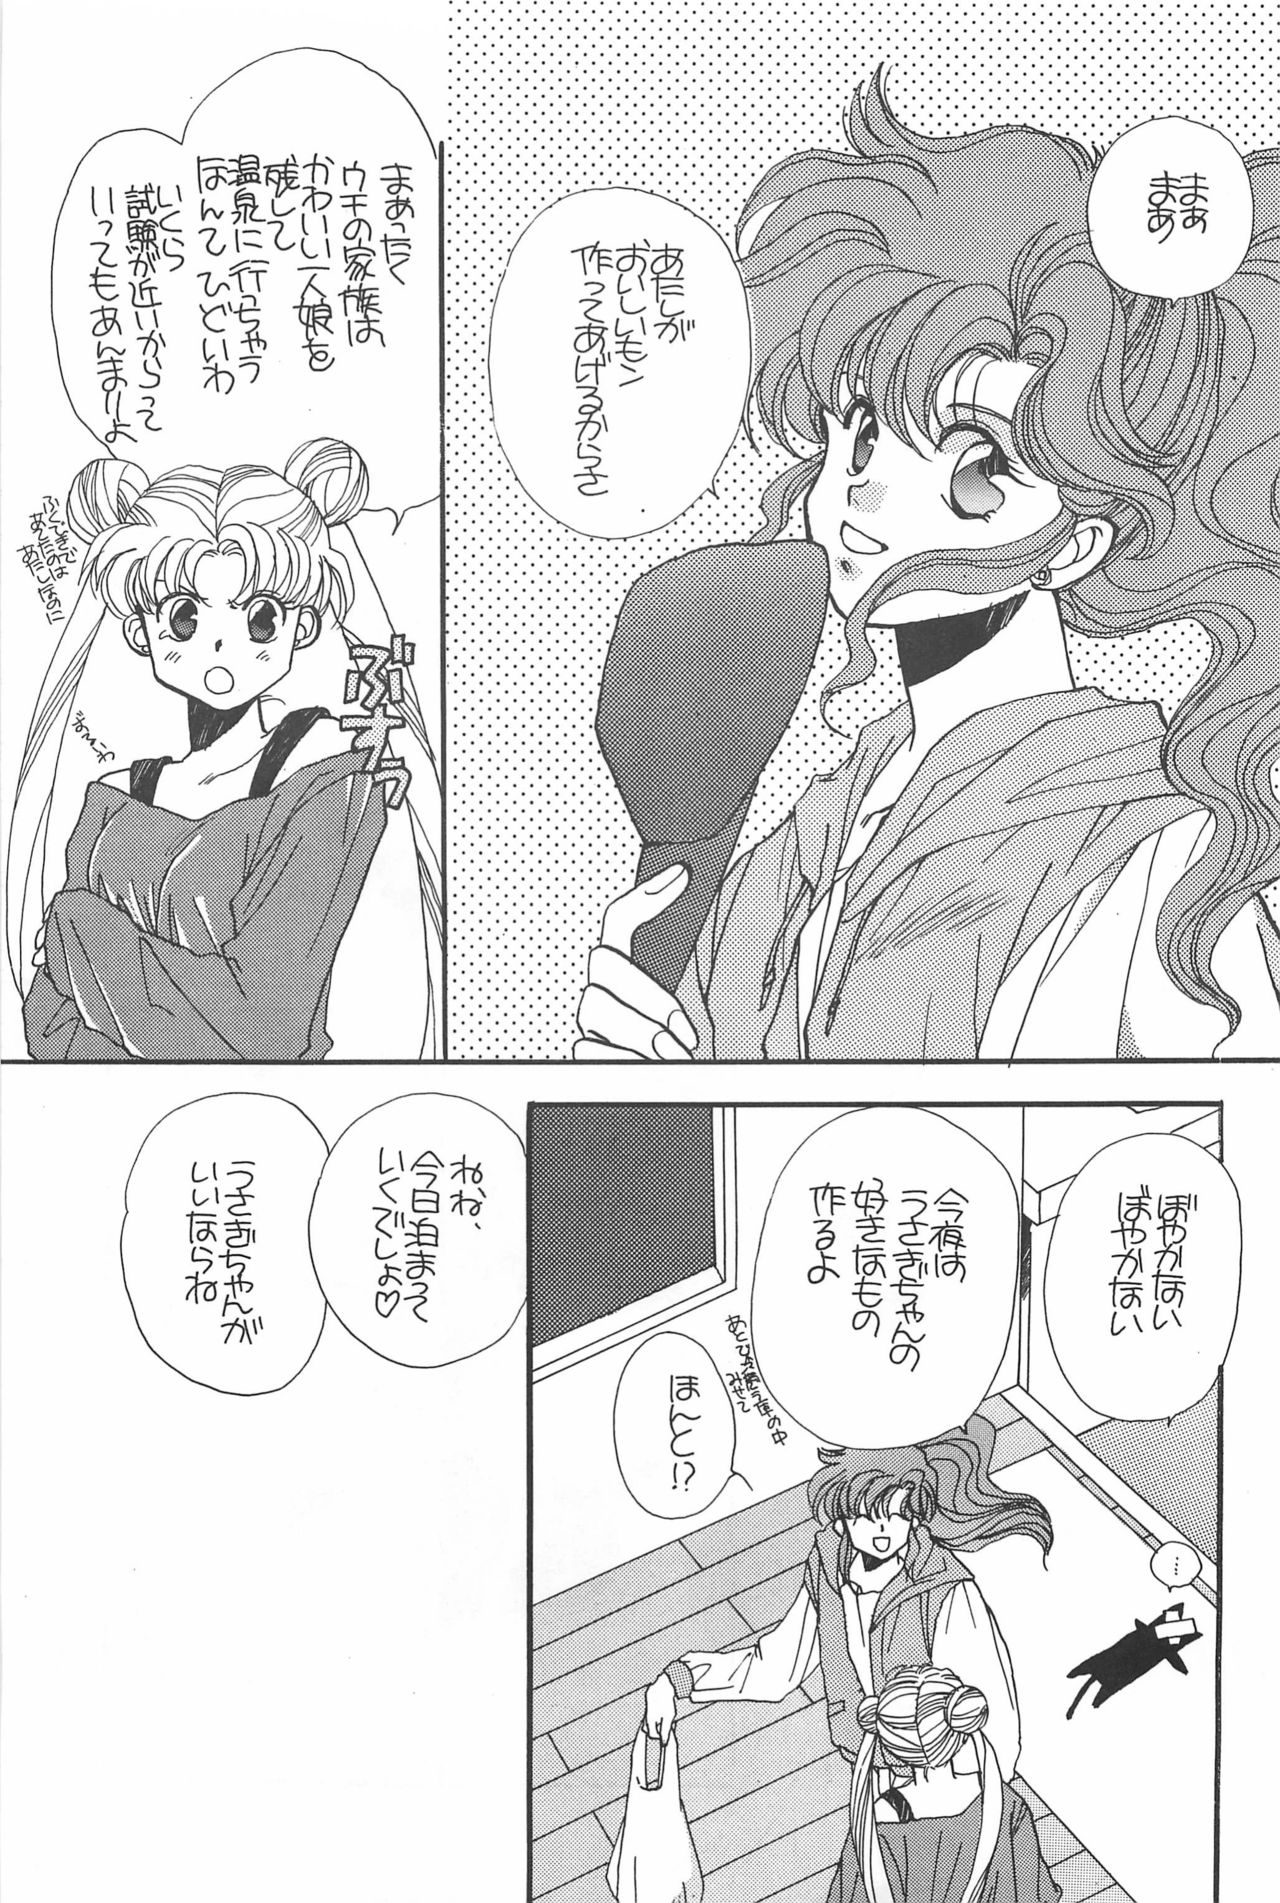 [Hello World (Muttri Moony)] Kaze no You ni Yume no You ni - Sailor Moon Collection (Sailor Moon) 152